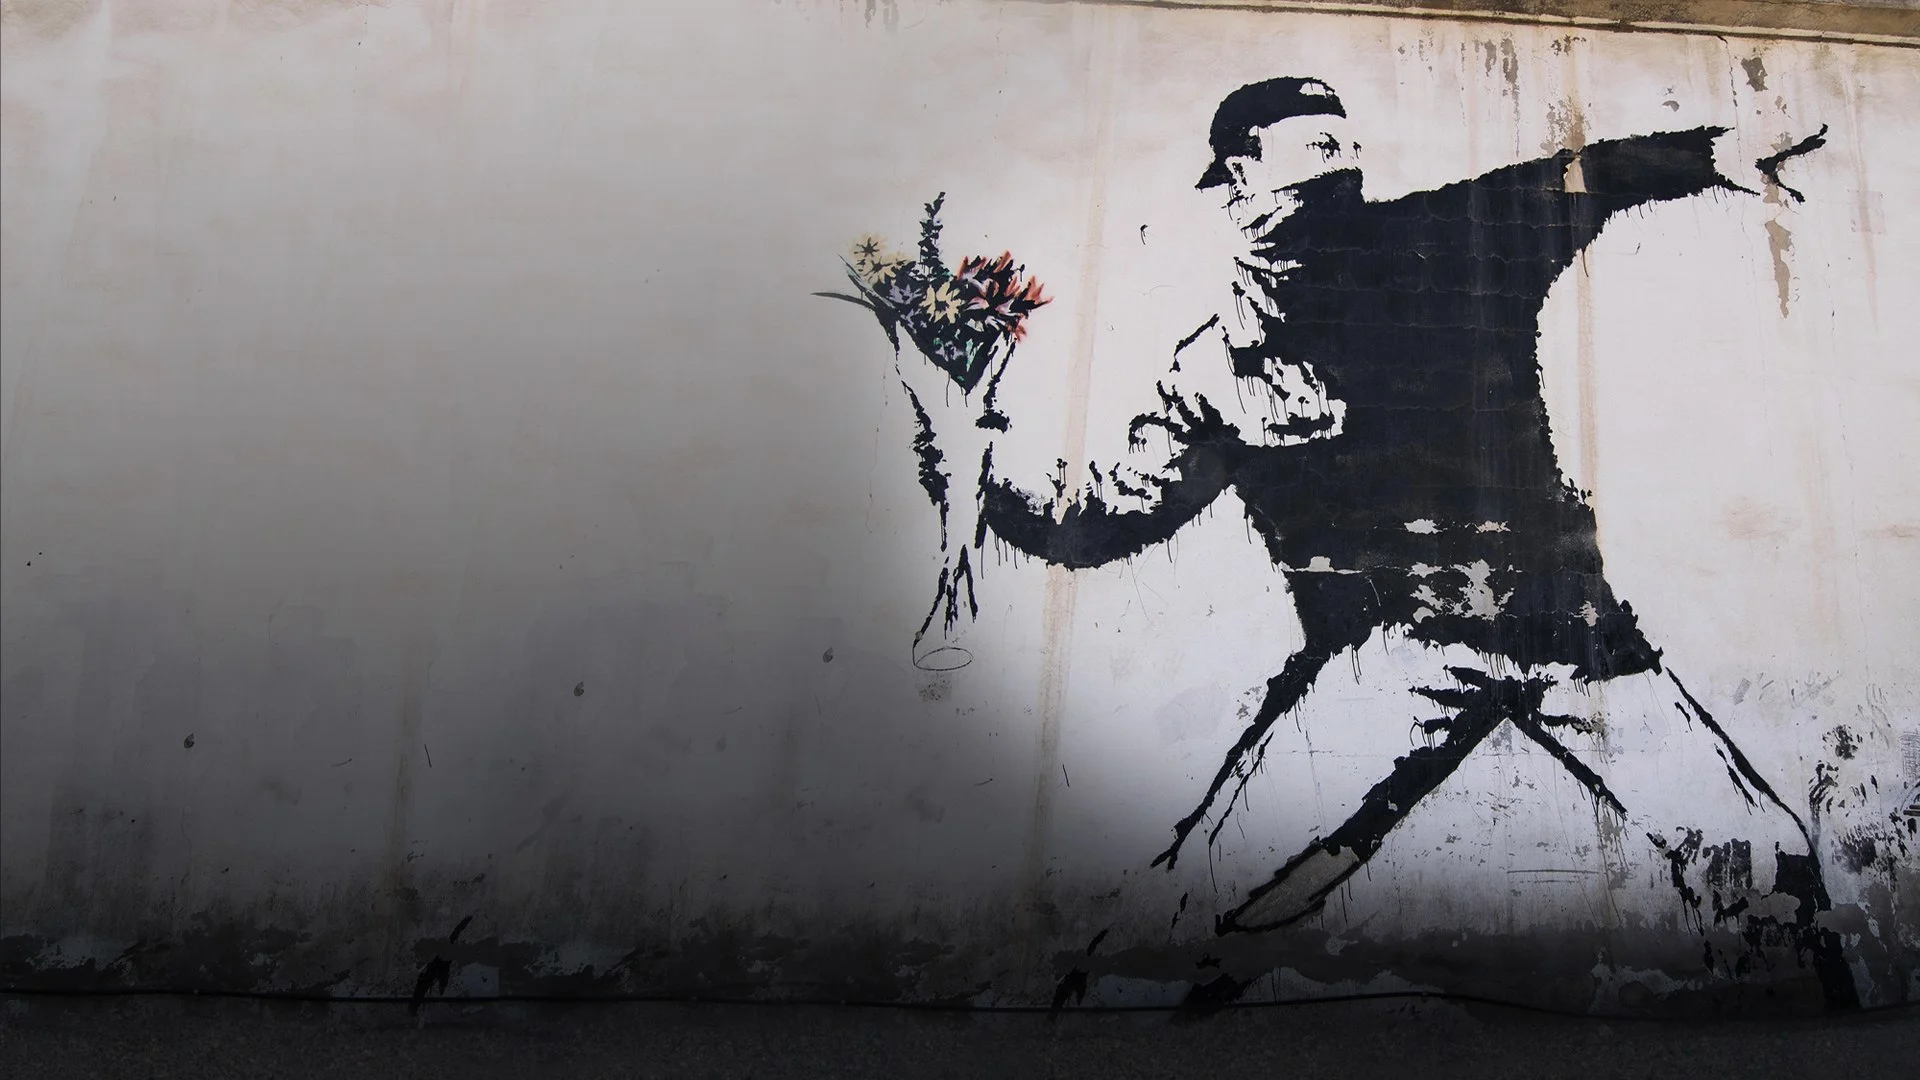 Banksy - L'arte della ribellione